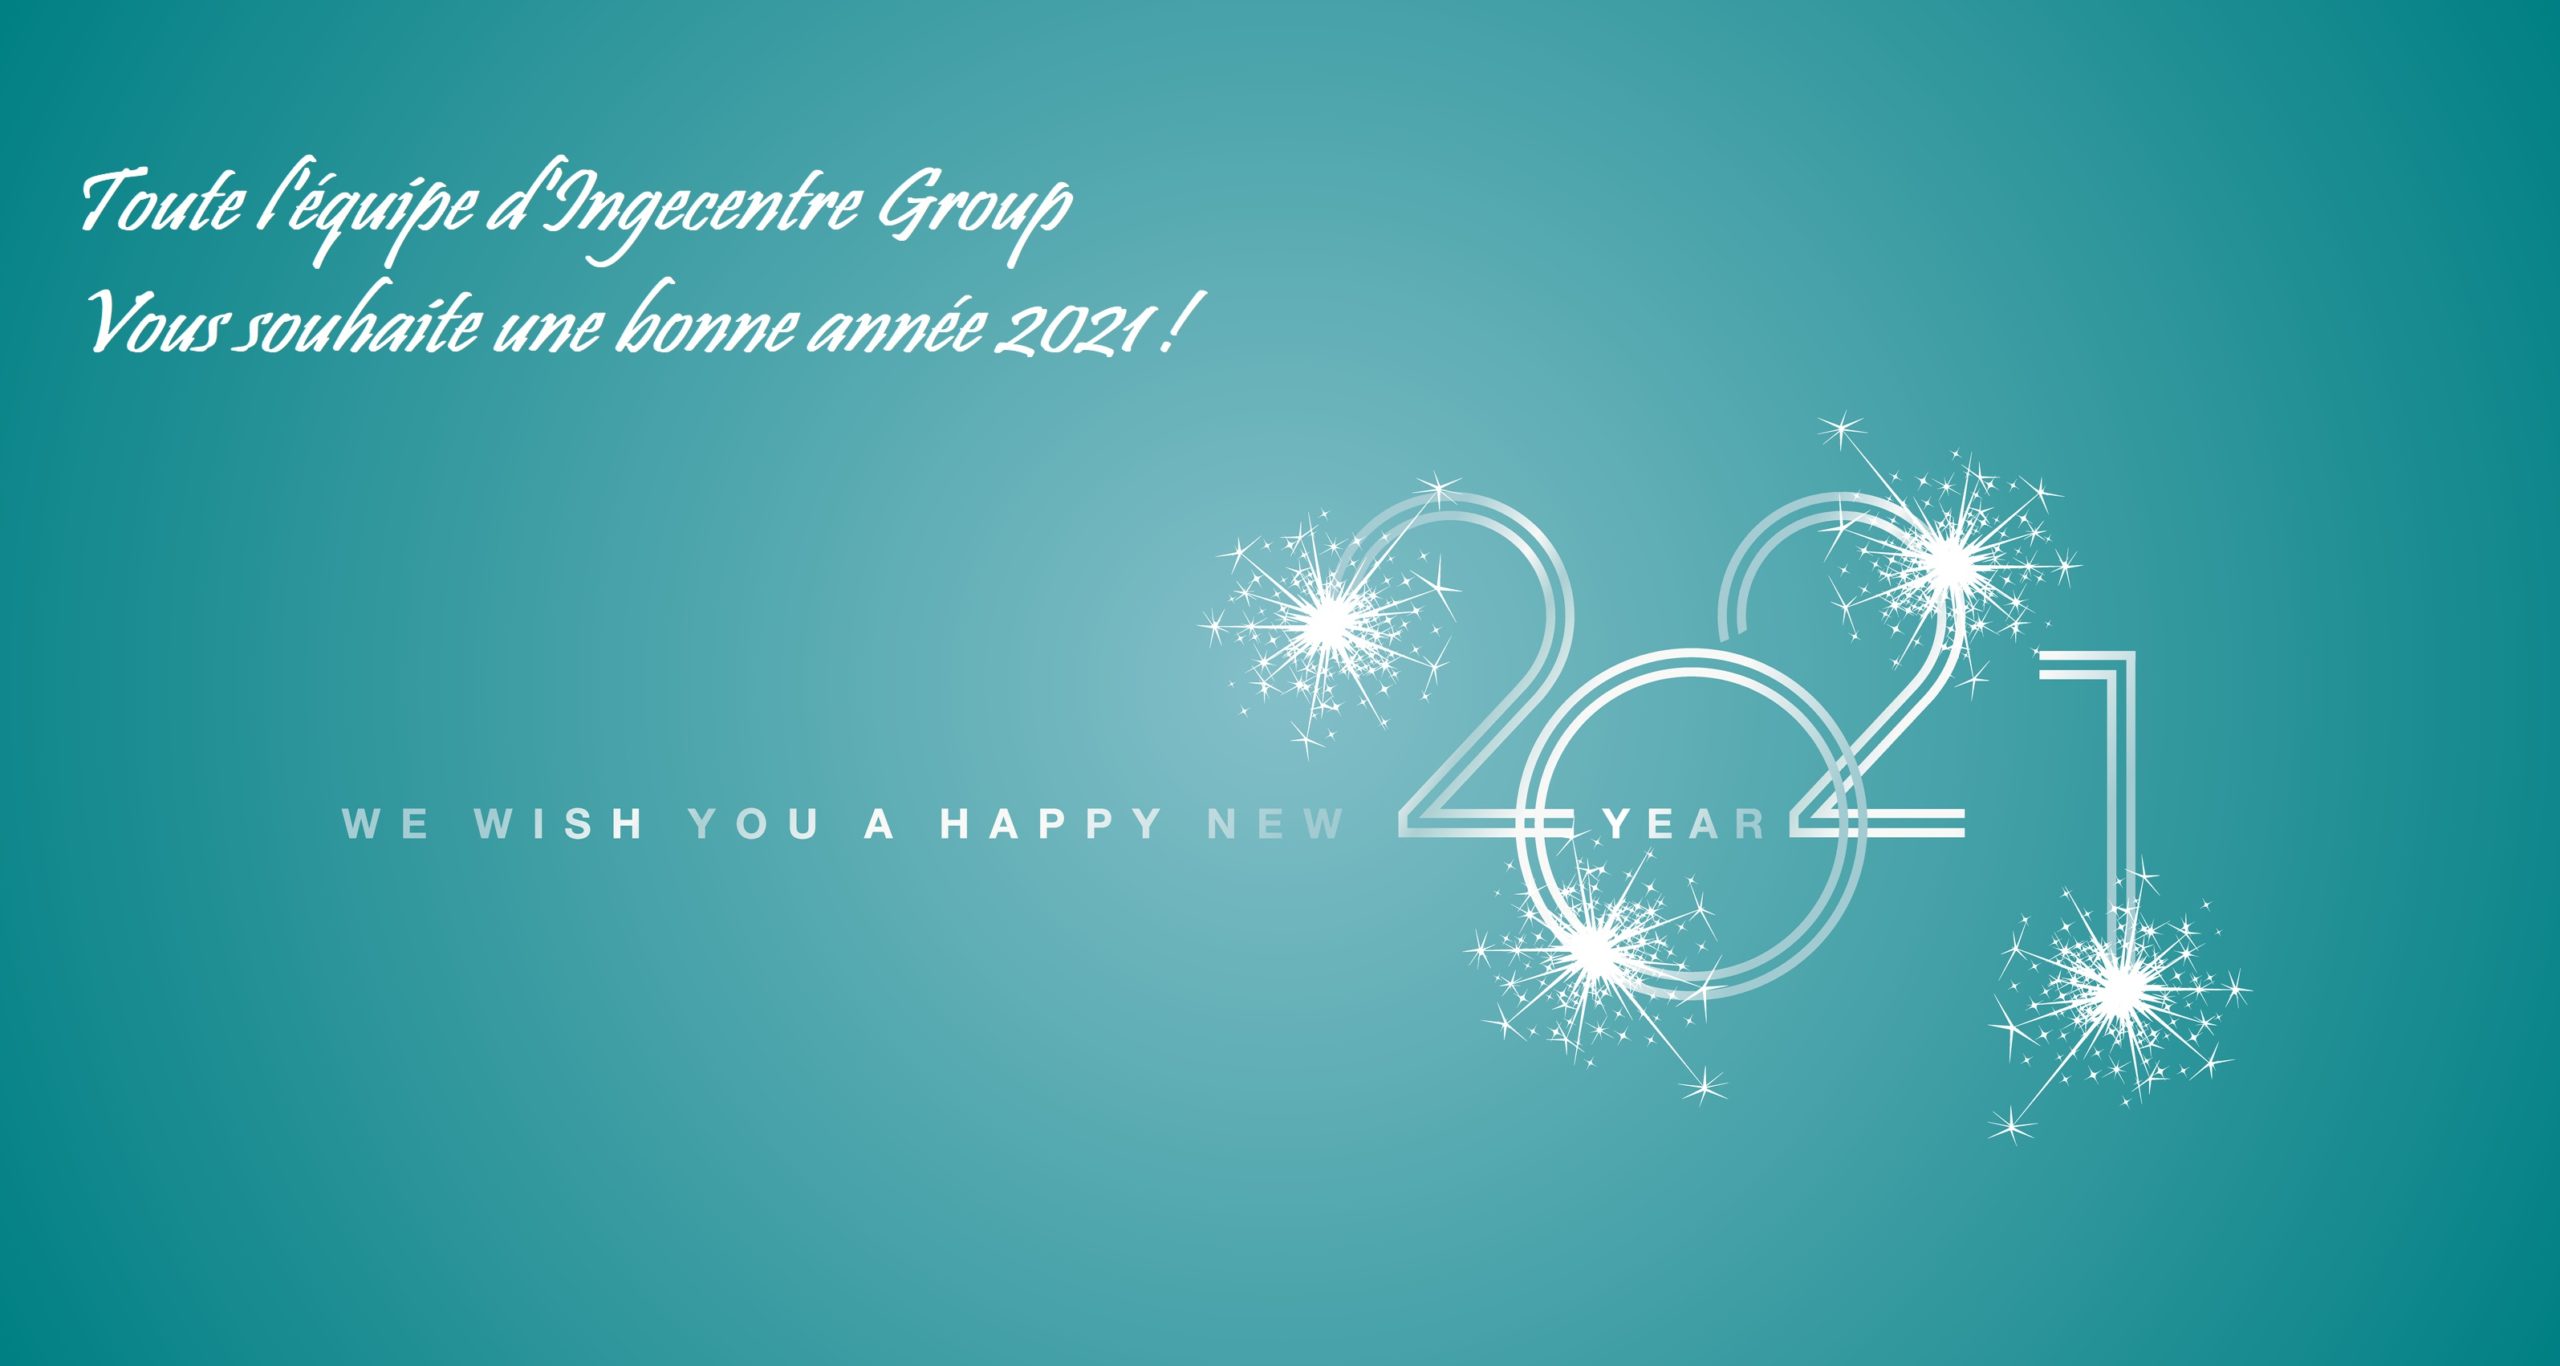 Toute l'équipe d'Ingecentre Group vous souhaite une bonne année 2021 !